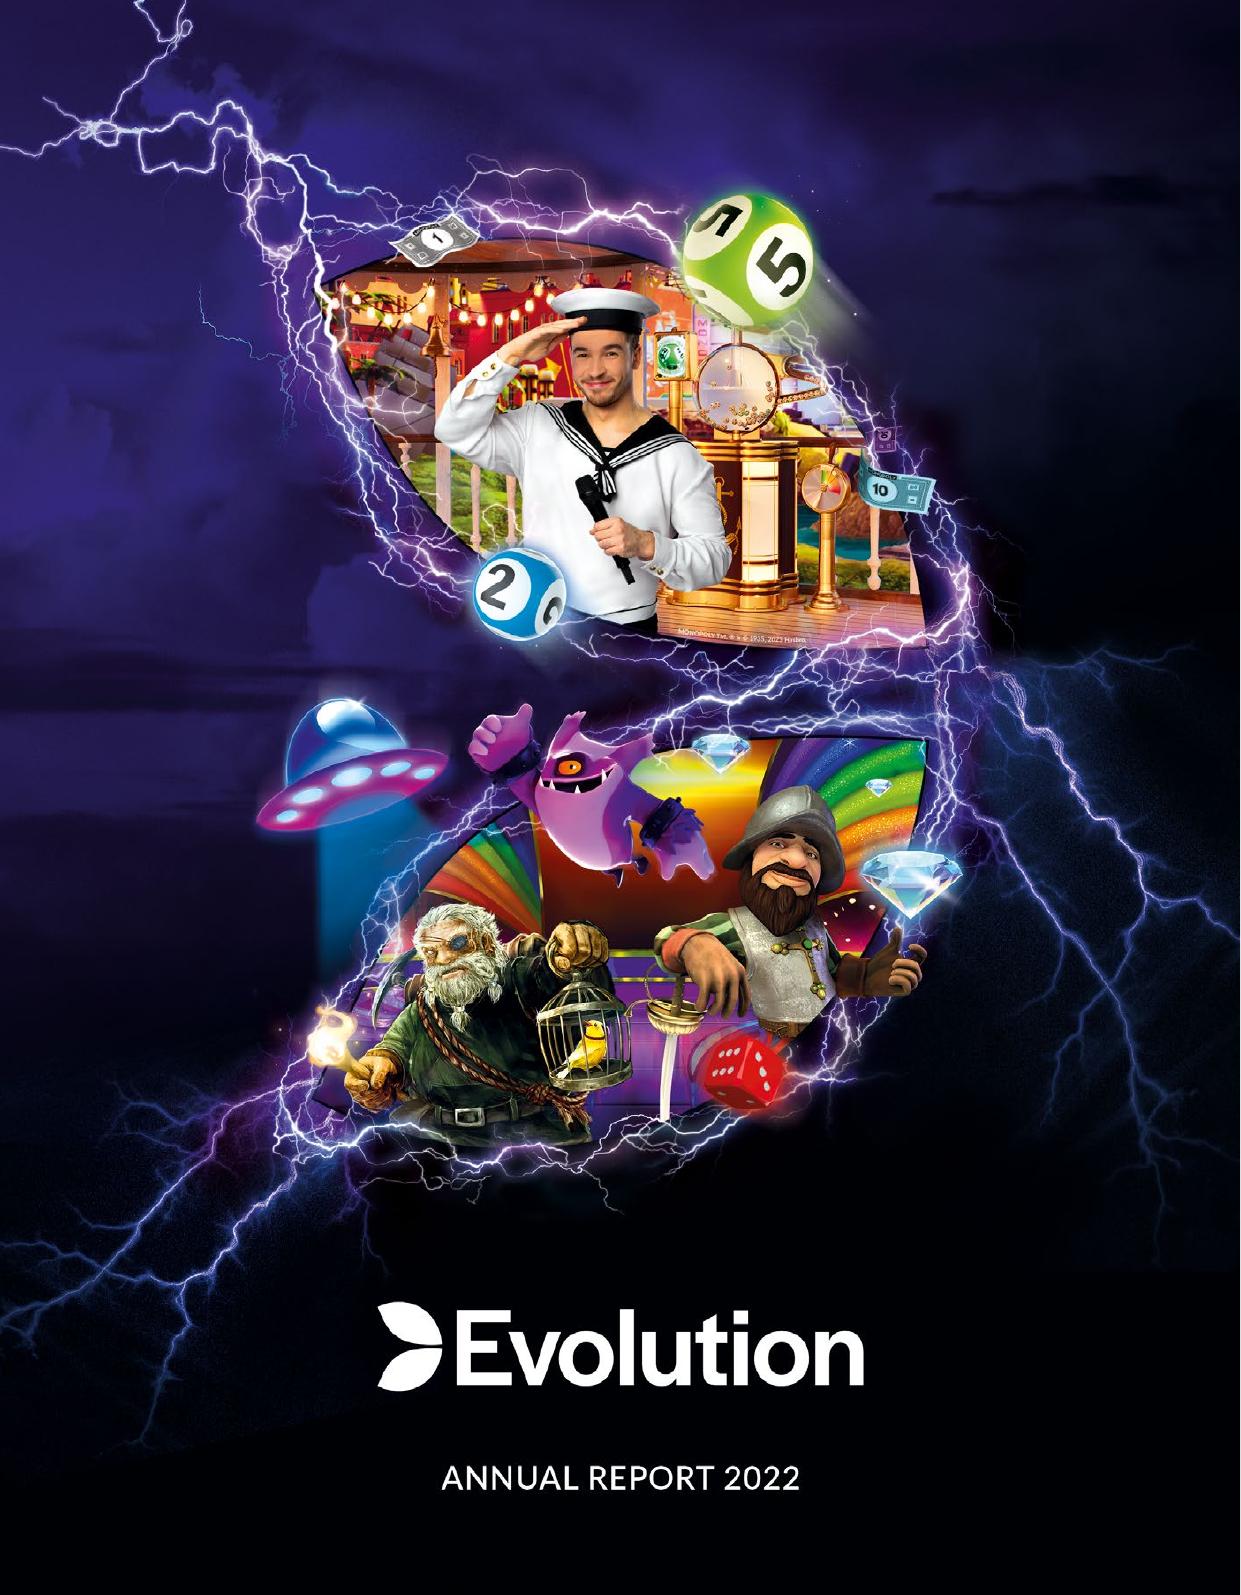 EVOLUTION 2022 Annual Report